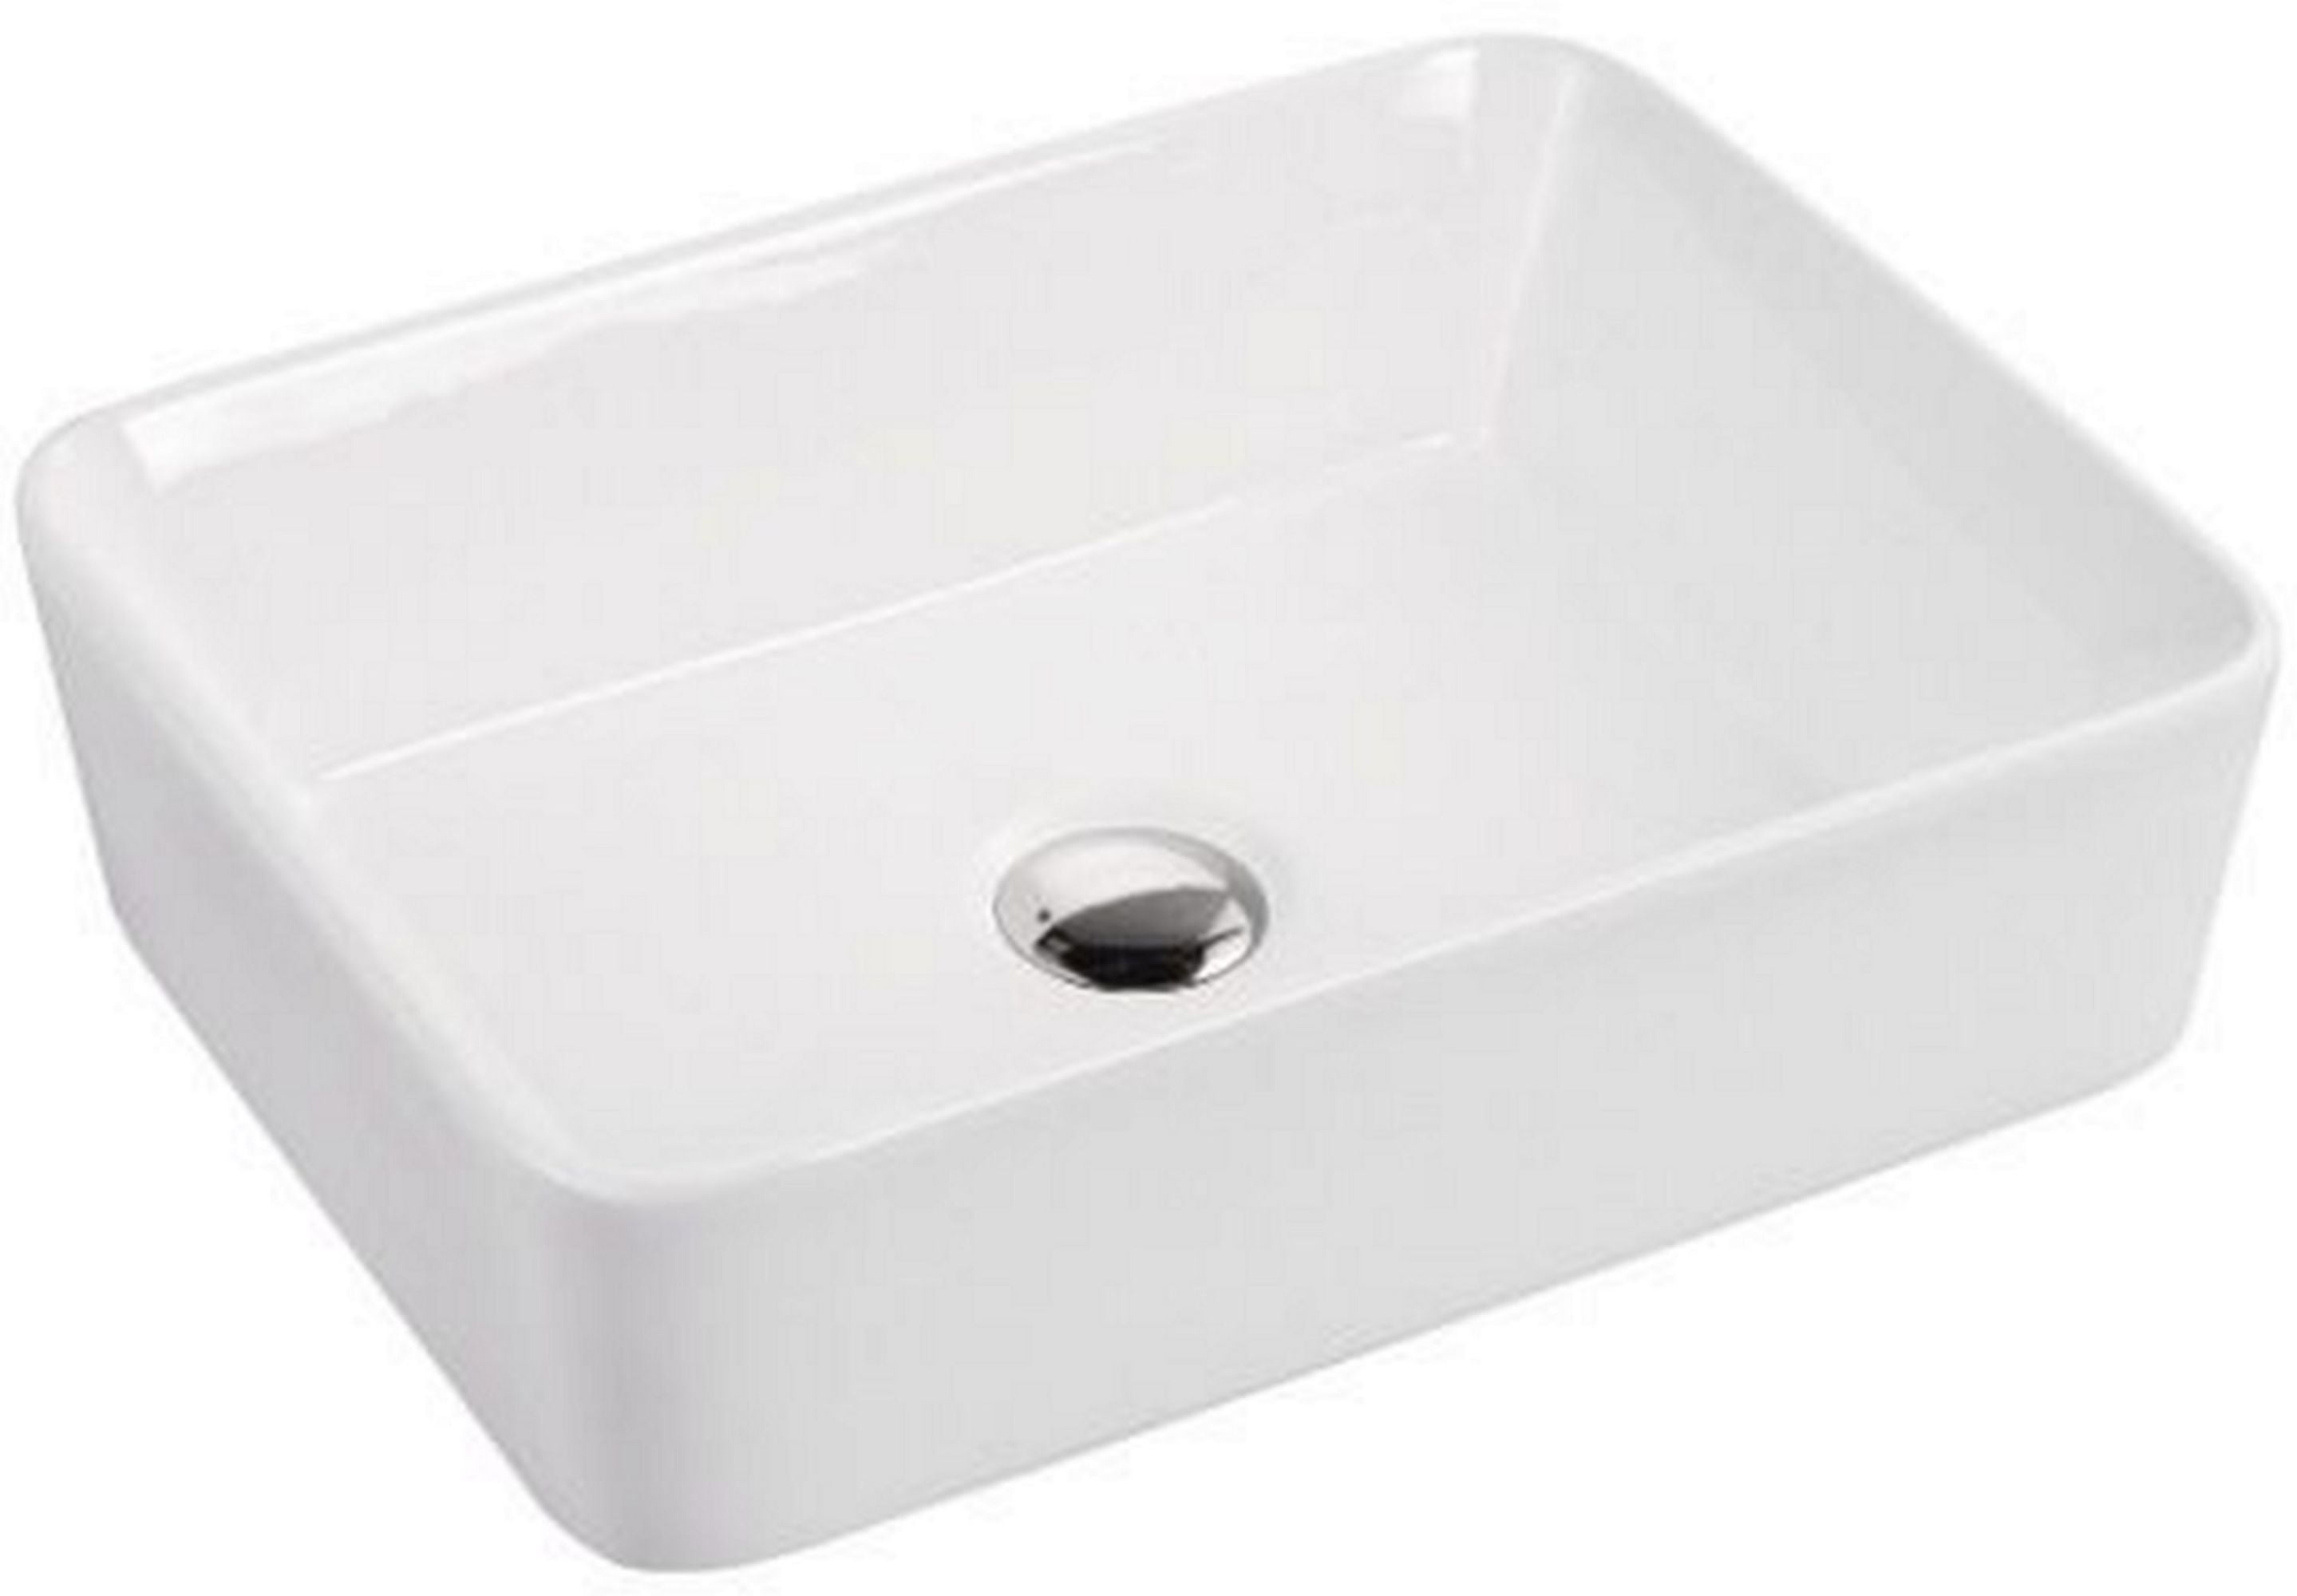 Picture of A & E Bath CCB-285B Mia Over the Counter Vessel Ceramic Basin Sink&#44; Glossy White - 18.87 x 14.56 x 4.93 in.